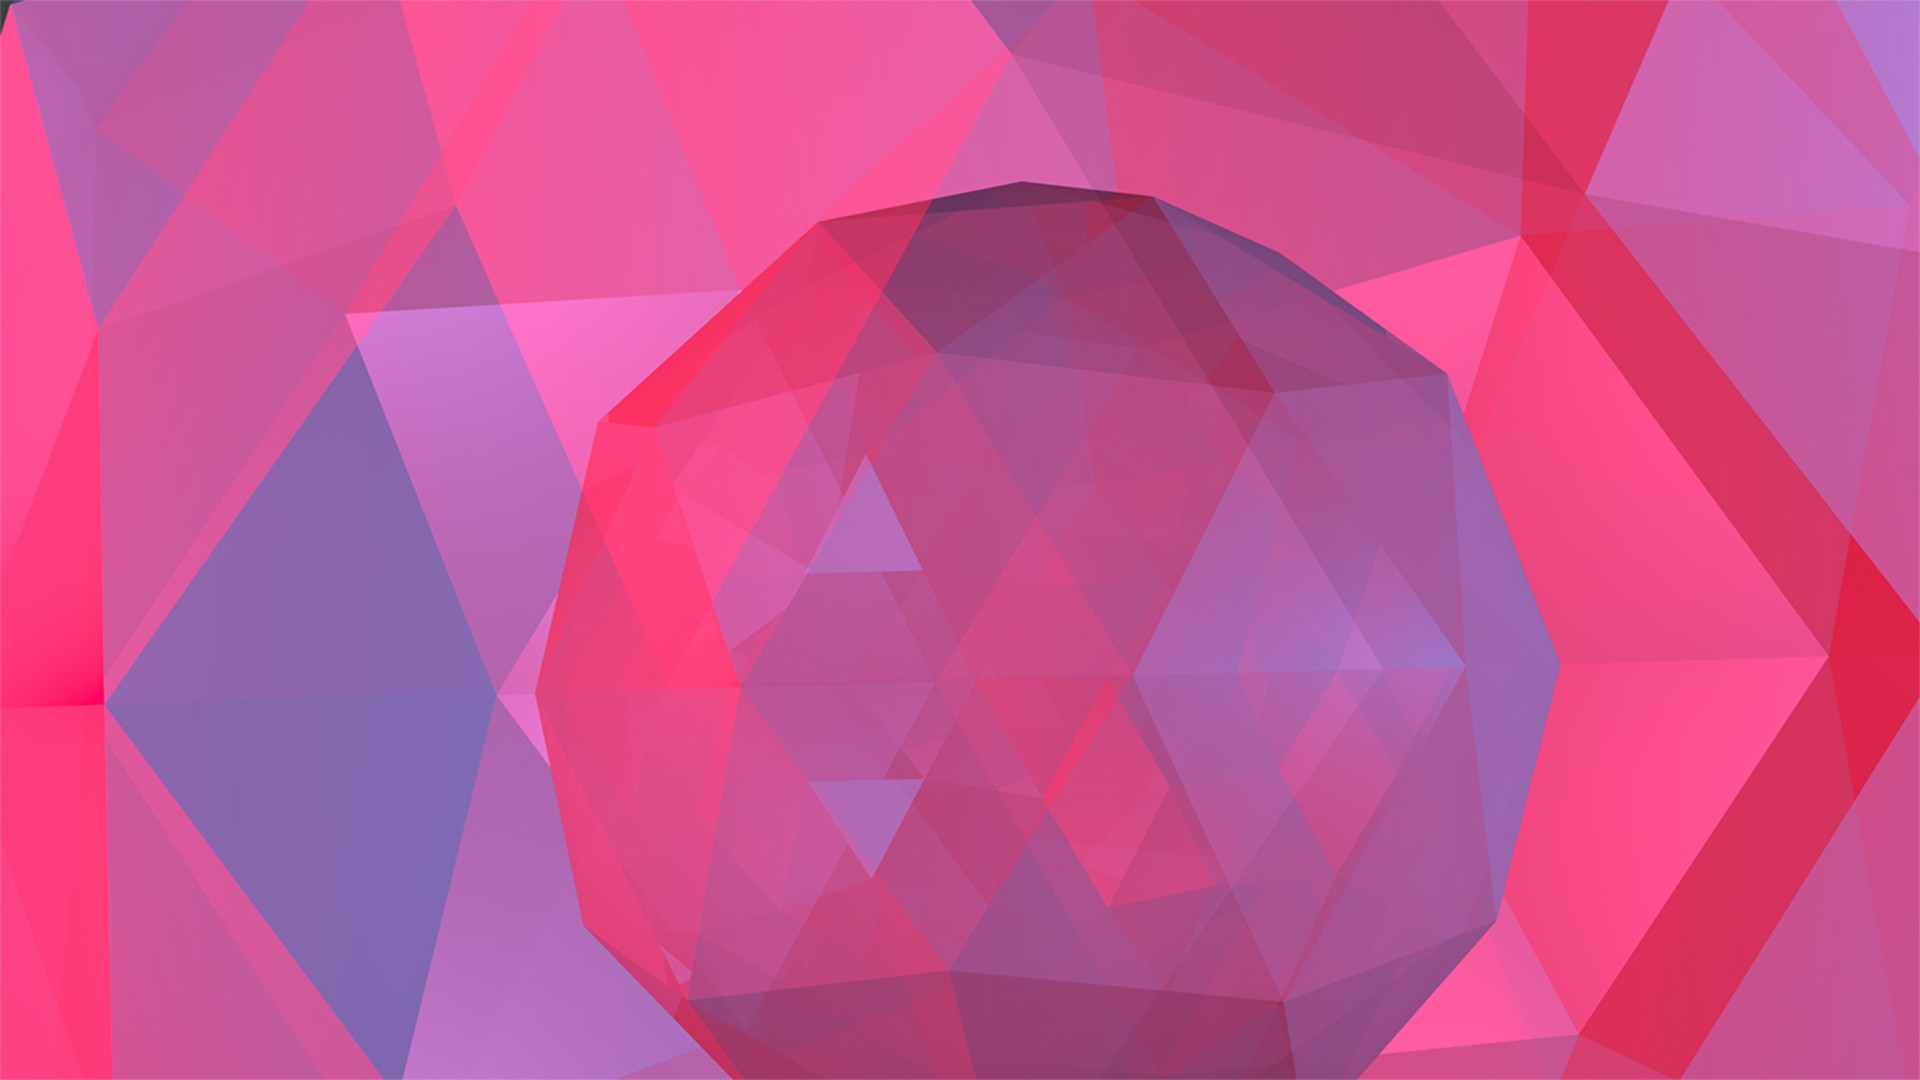 General 1920x1080 low poly digital art pink CGI geometric figures sphere